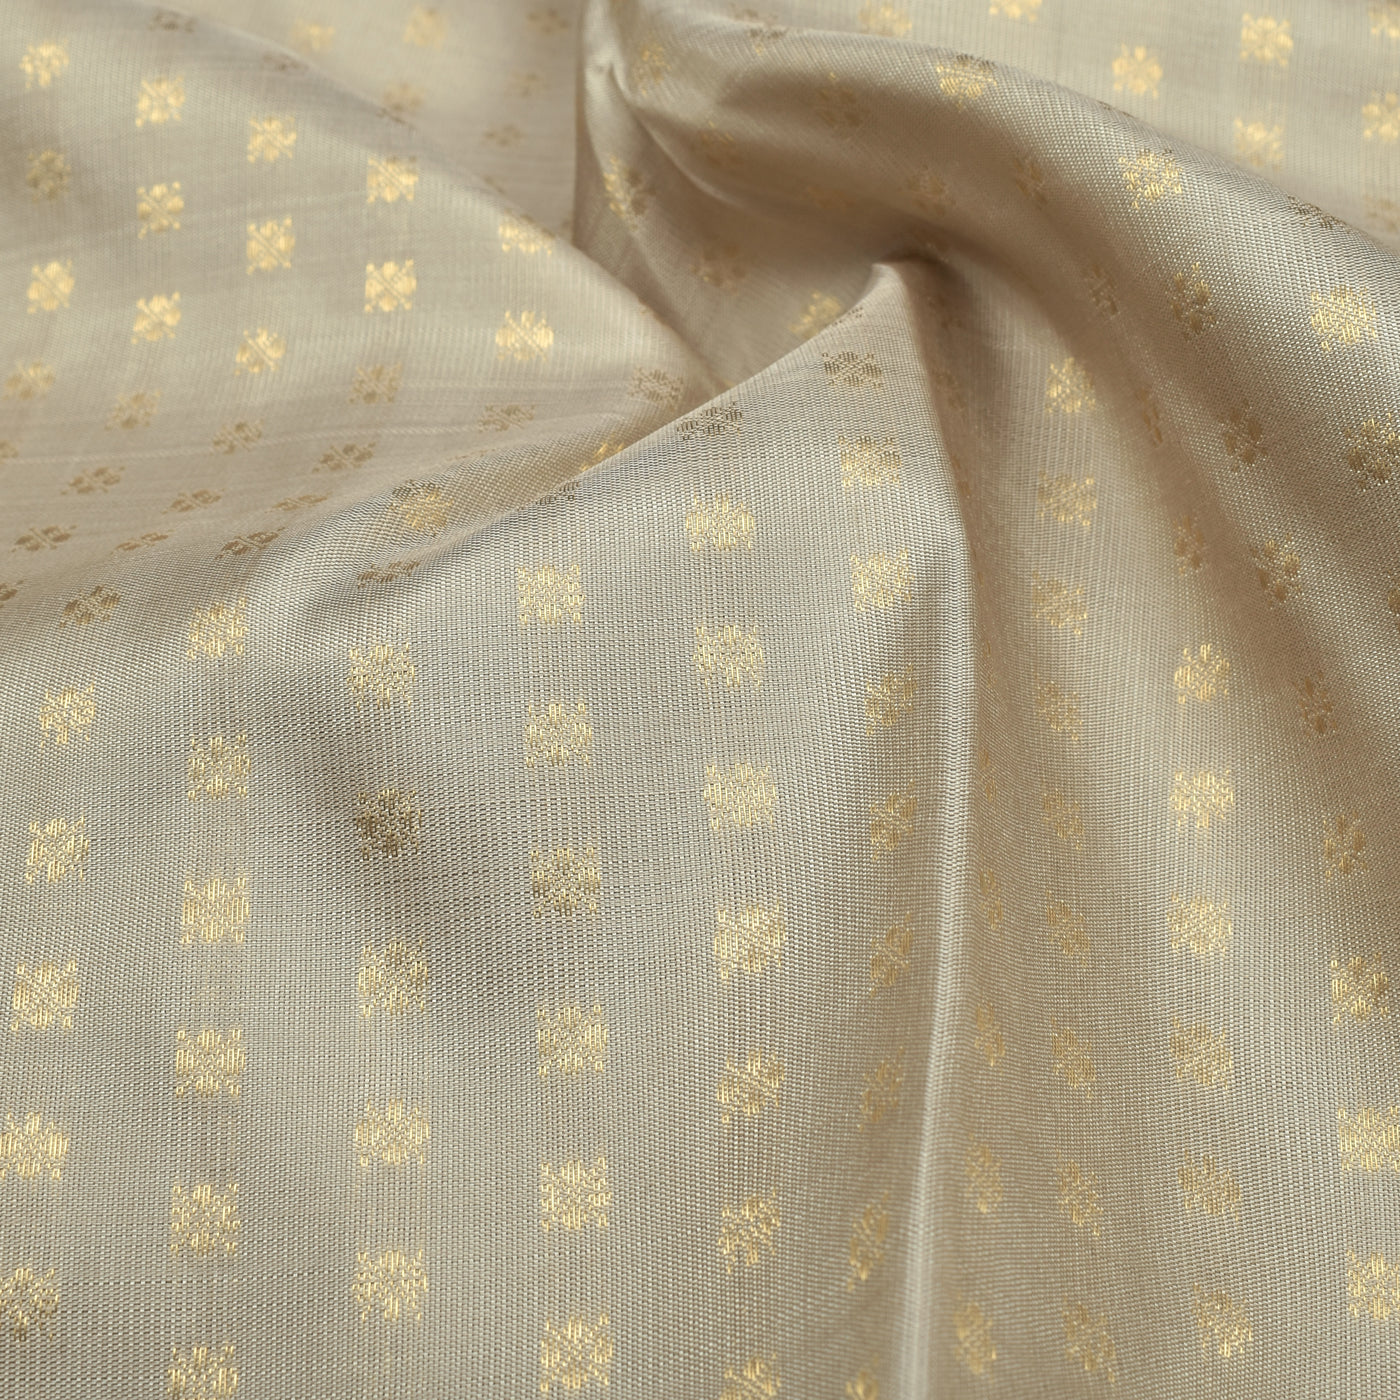 Off White Kanchi Silk Fabric with Small Zari Butta Design